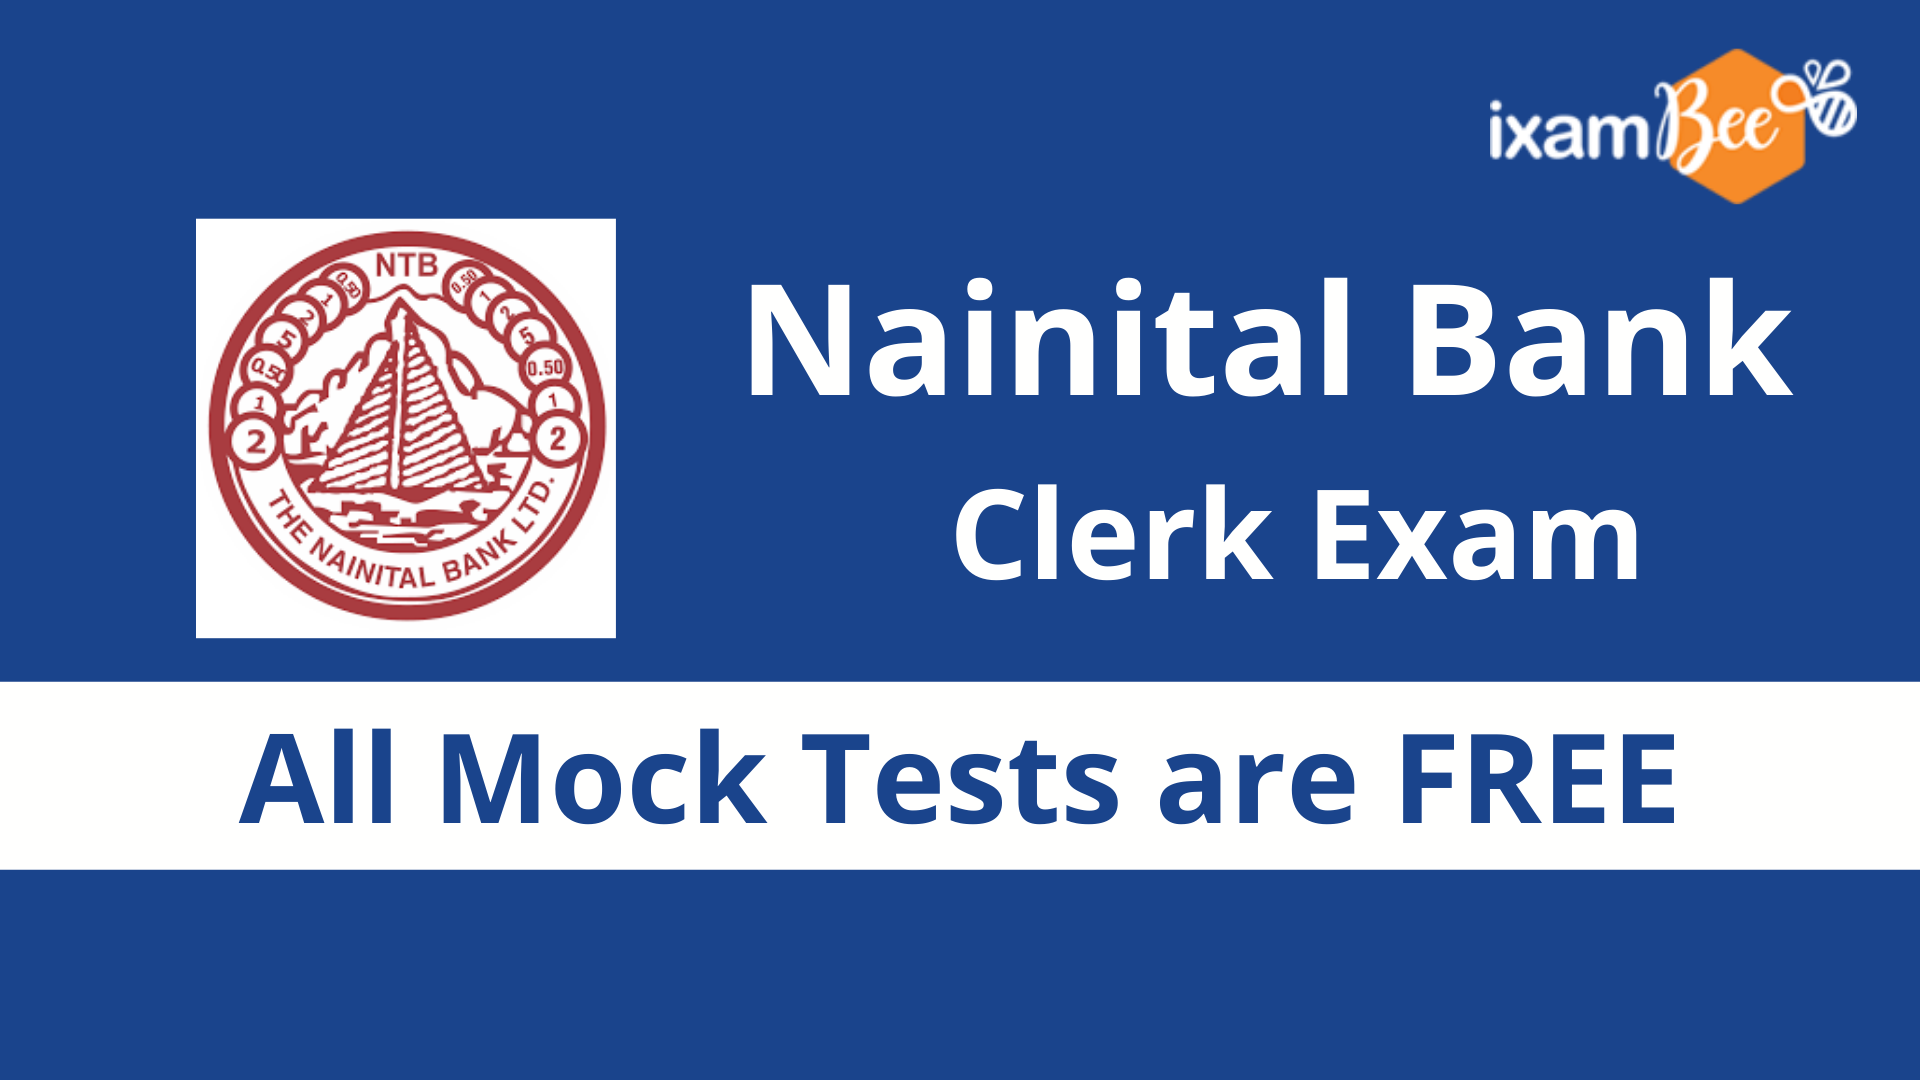 Nainital Bank Free Mock Test